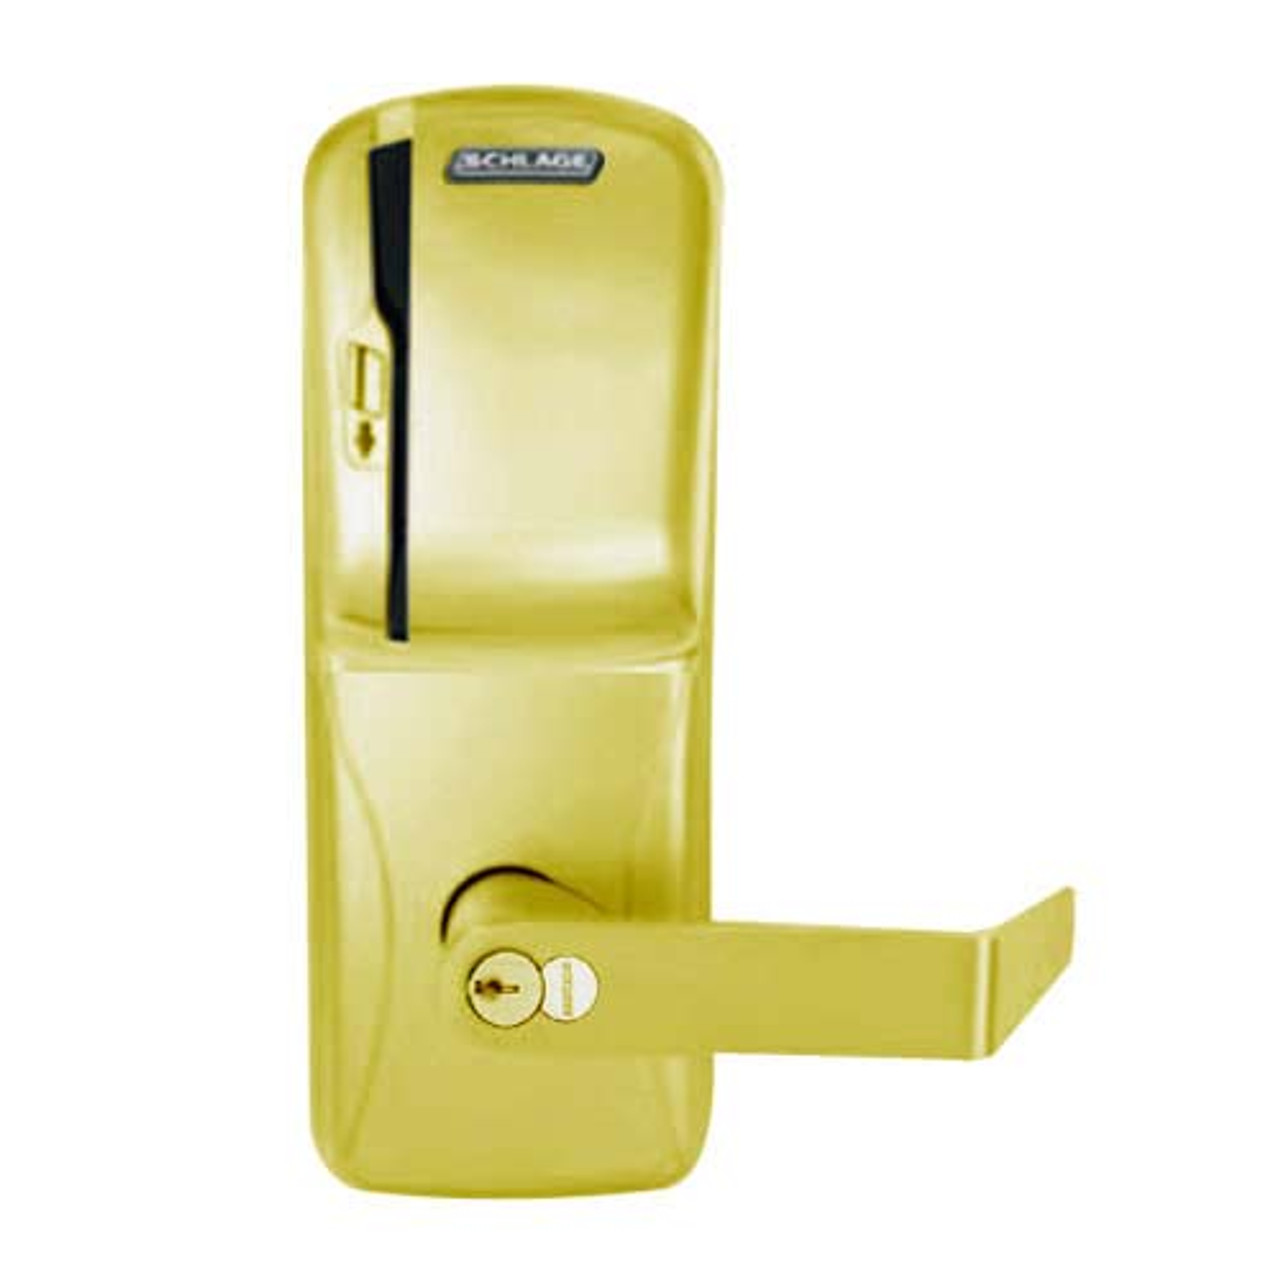 CO200-MS-50-MS-RHO-GD-29R-605 Mortise Electronic Swipe Locks in Bright Brass